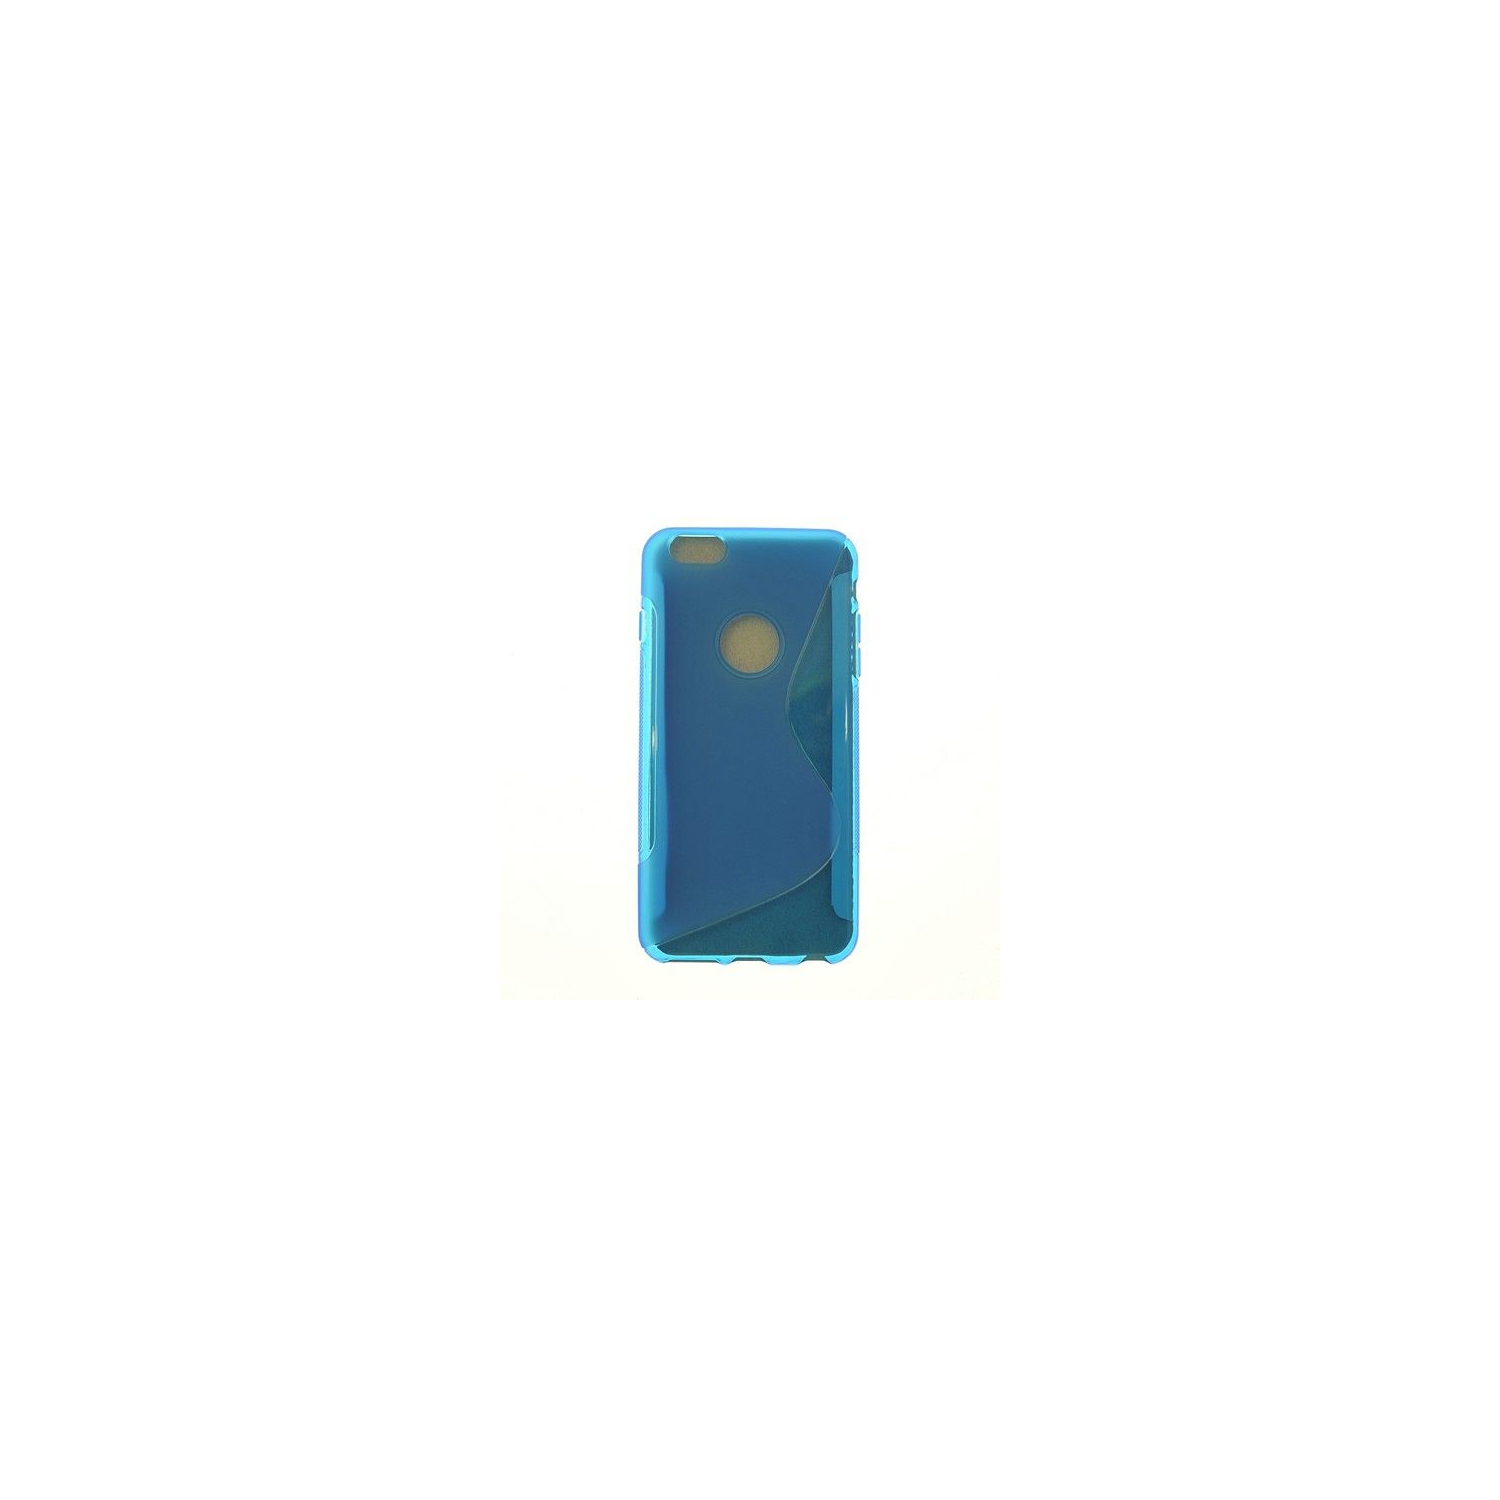 Iphone 6 Plus, Iphone 6s Plus S Line Design Soft Case, Blue